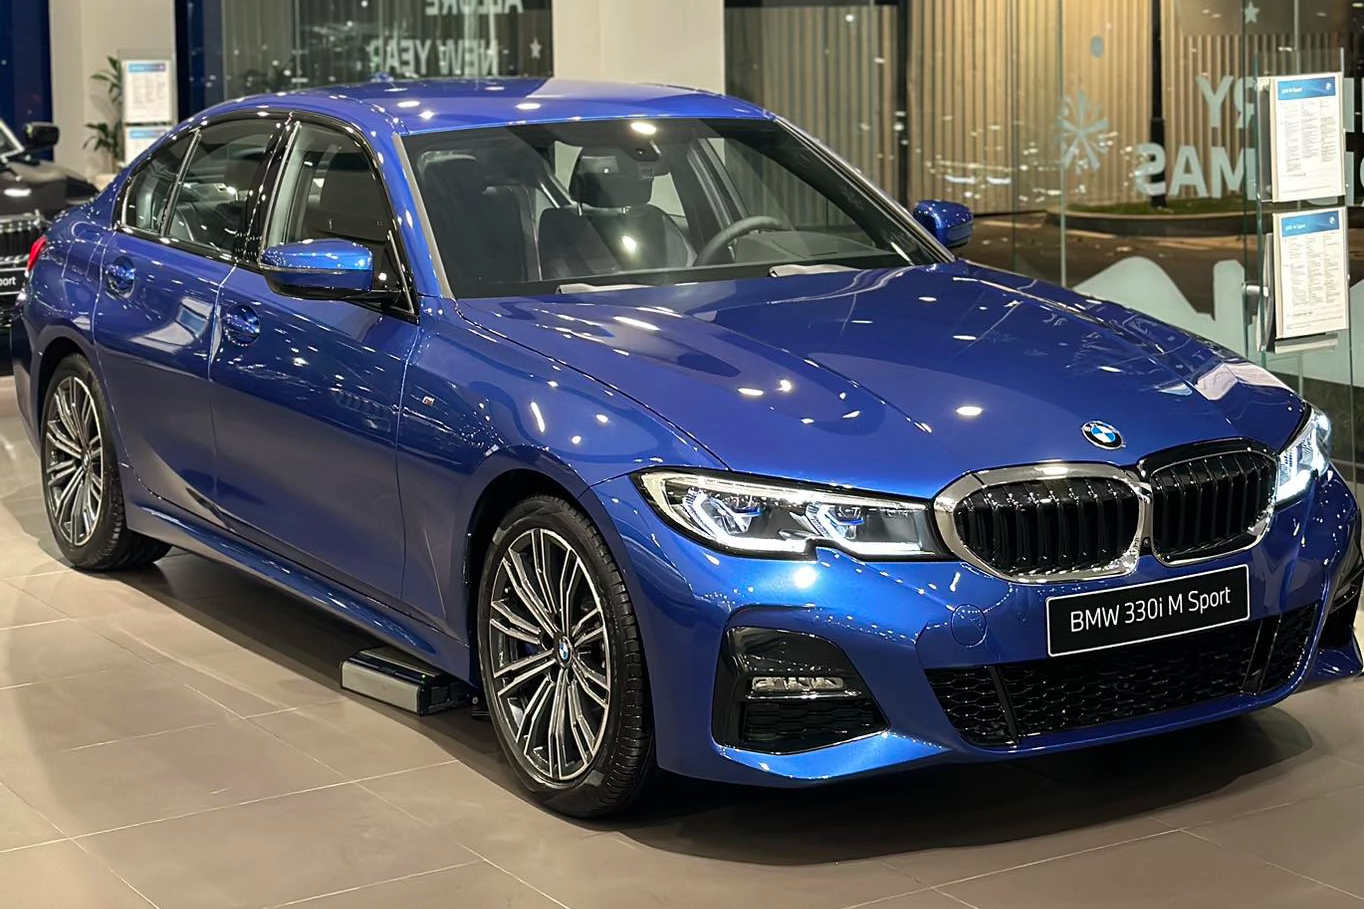 Ảnh chi tiết BMW 3 Series lắp ráp: Nâng cấp nhiều trang bị từ bản tiêu chuẩn, rẻ hơn xe nhập 815 triệu đồng - Ảnh 9.